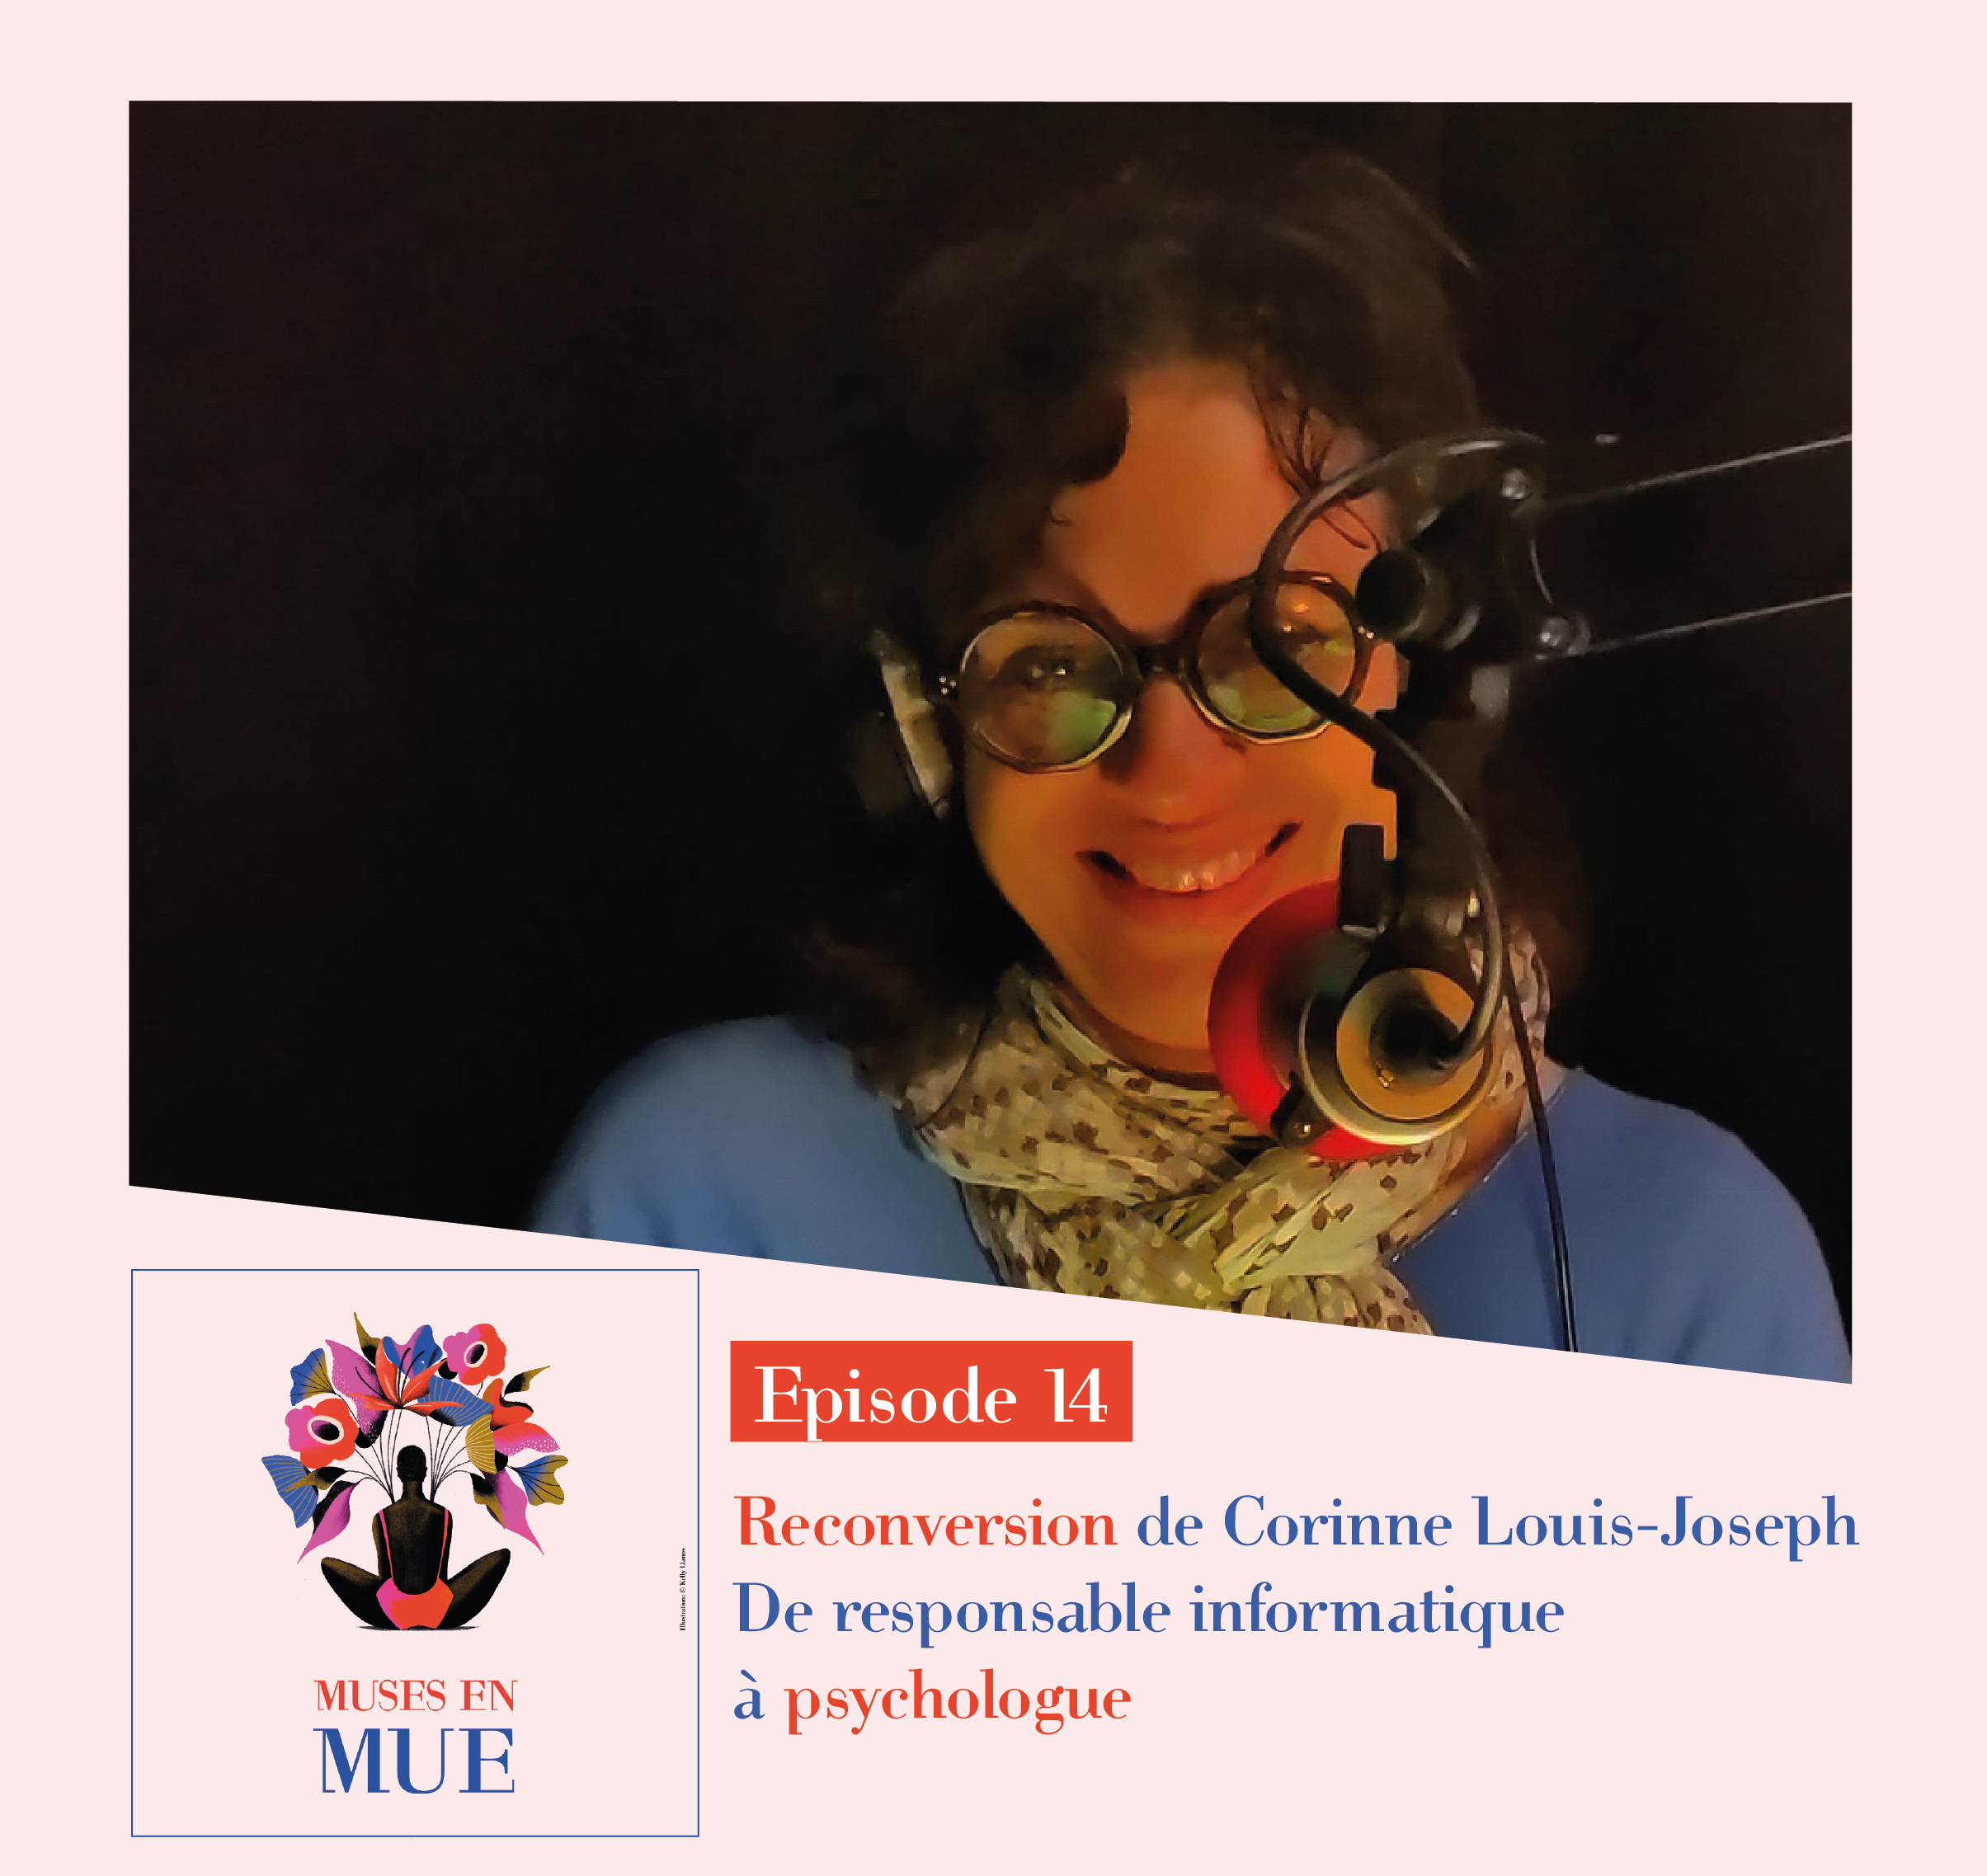 MUSES EN MUE – Episode 14 sur la reconversion de Corinne Louis-Joseph